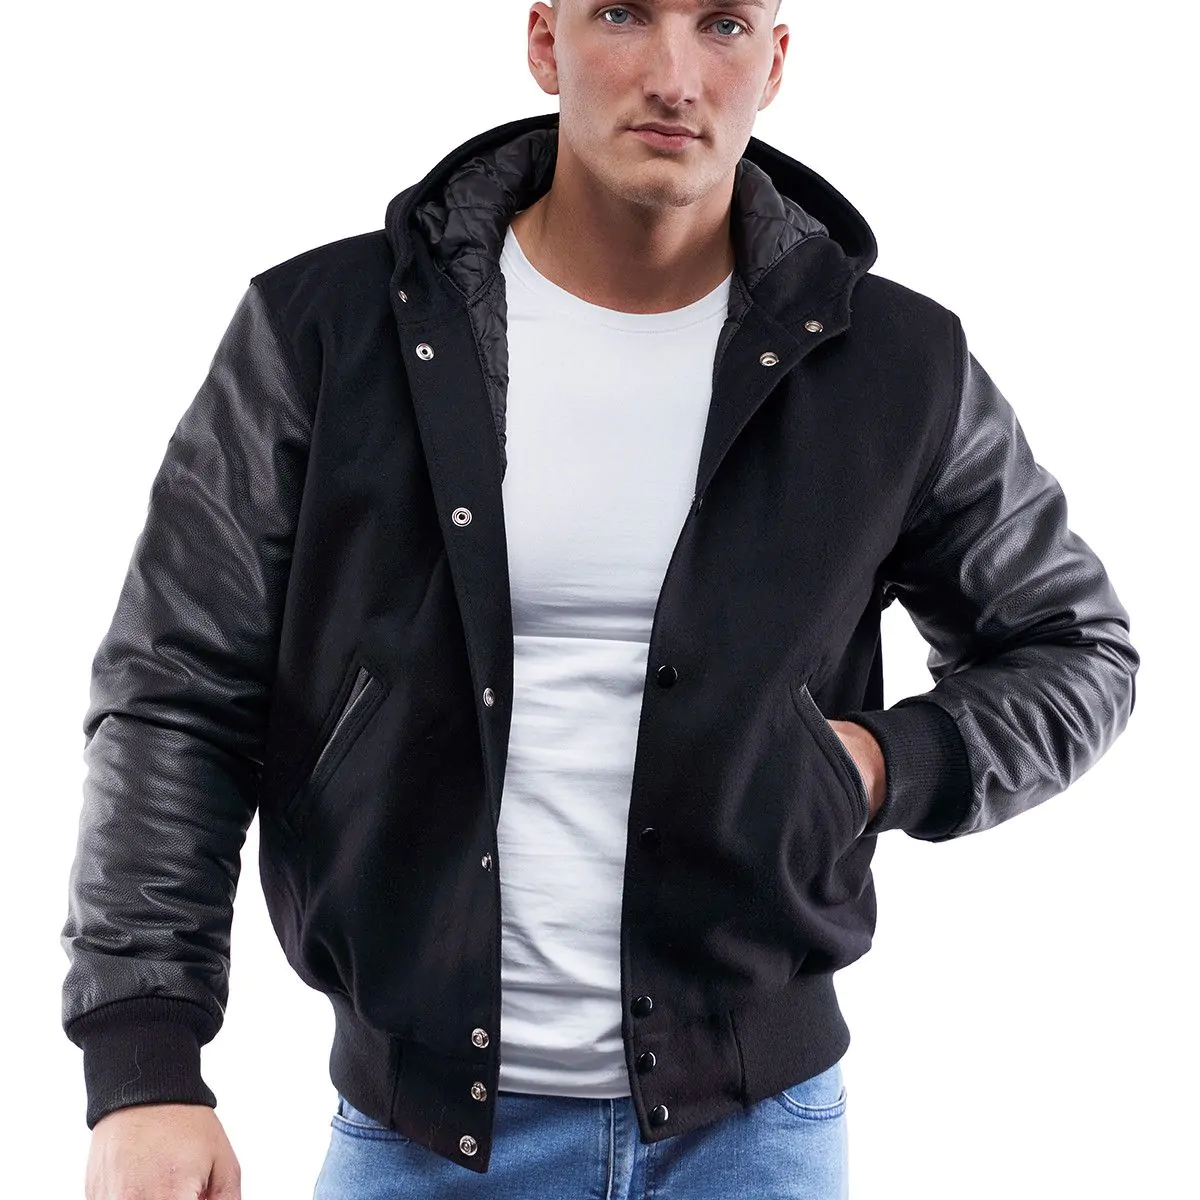 Black Wool Hoodie Letterman Jacket Stylish Wardrobe Essential